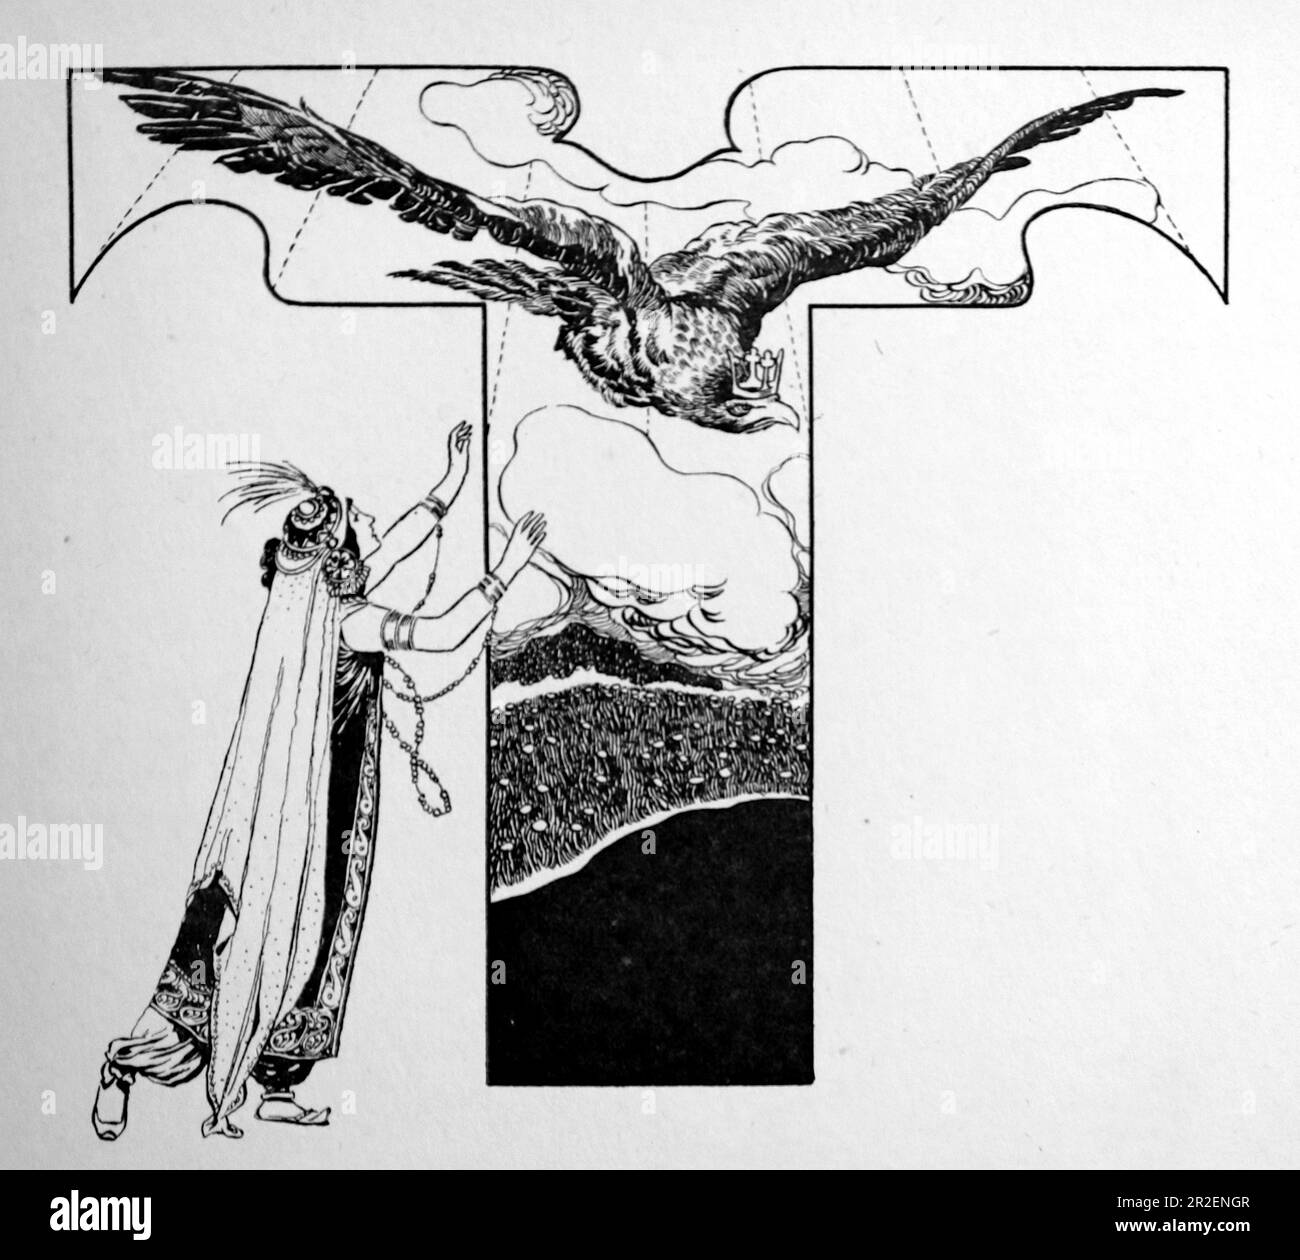 Von Rene Bull Strichzeichnung einer Dame mit einem großen Adler wie ein Vogel – der Vogel trägt eine Krone. Aus Richtung Rubaiyat von Omar Khayyam. Stockfoto